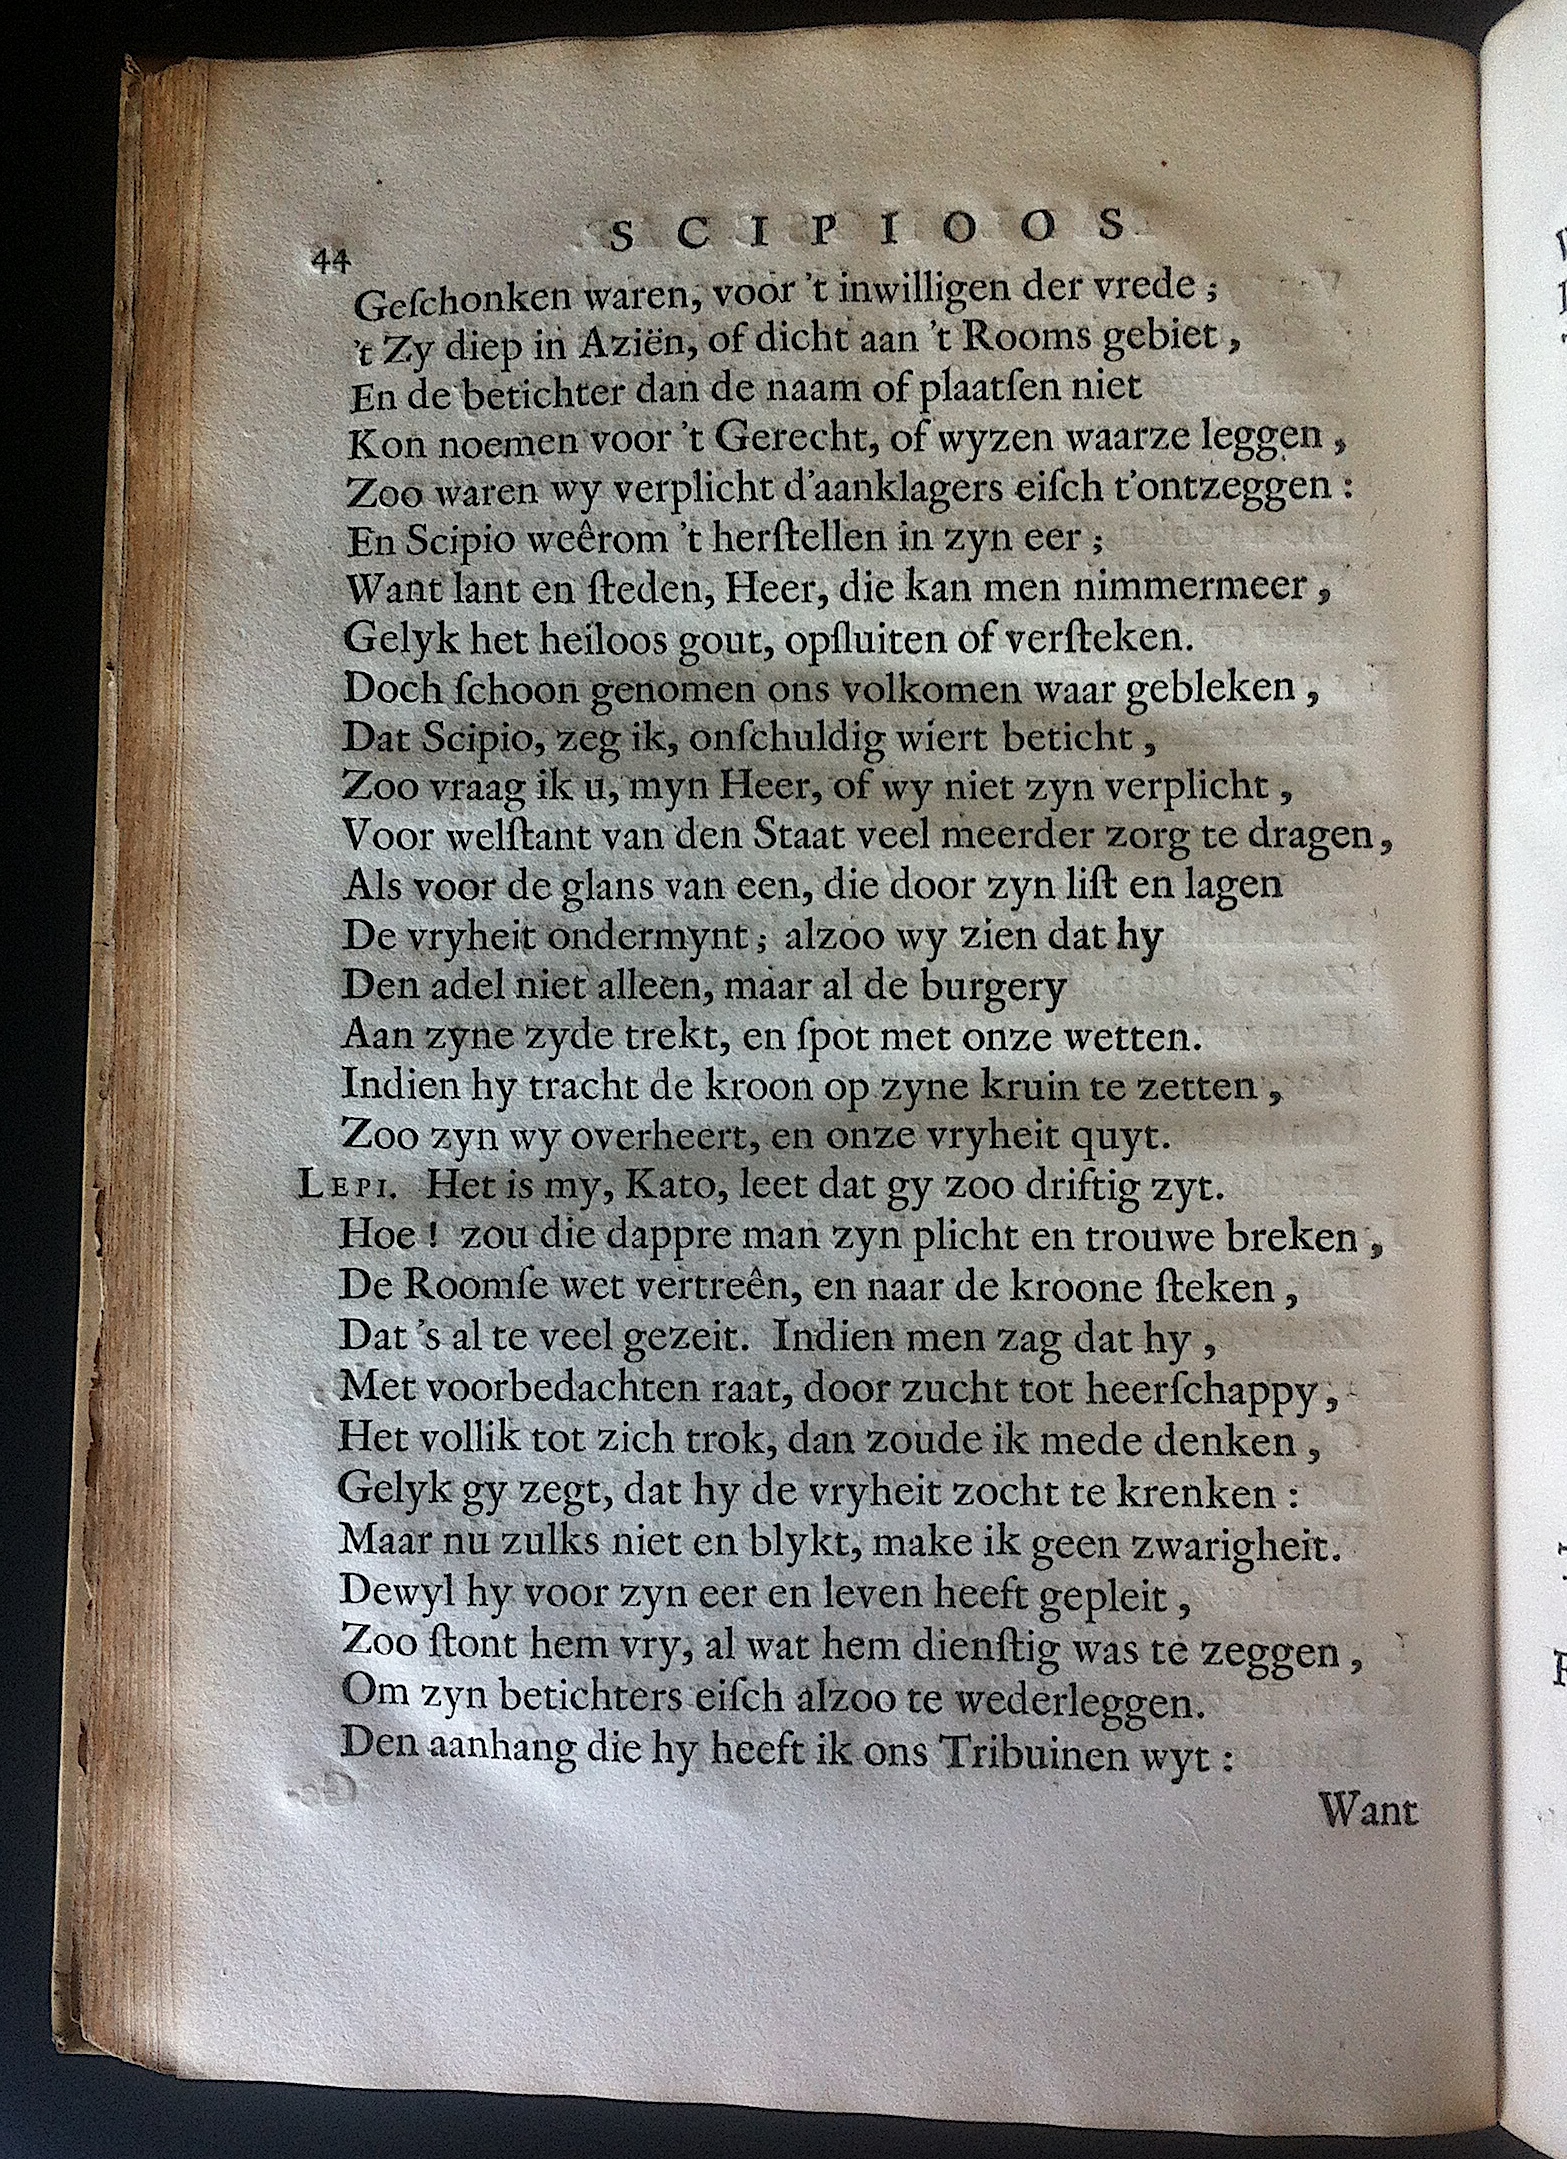 BoccardScipioFolio1658p44.jpg